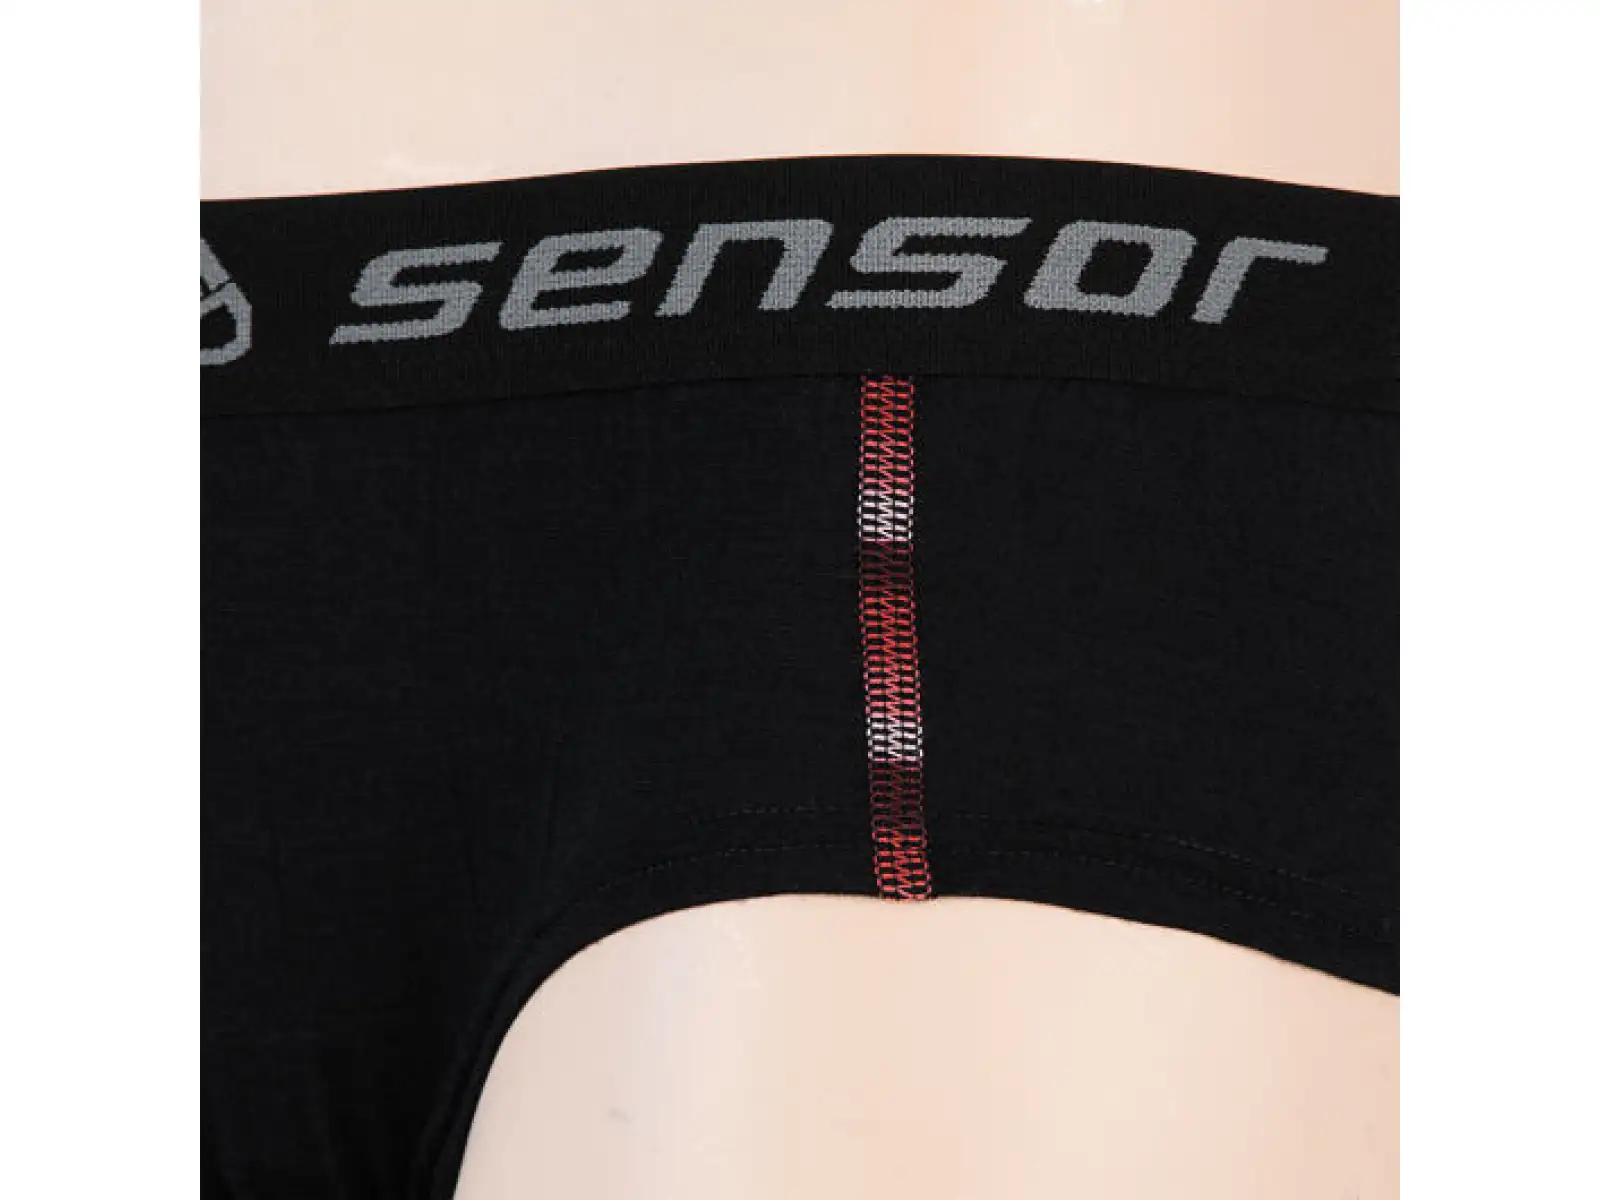 Sensor Merino Air dámské kalhotky černá